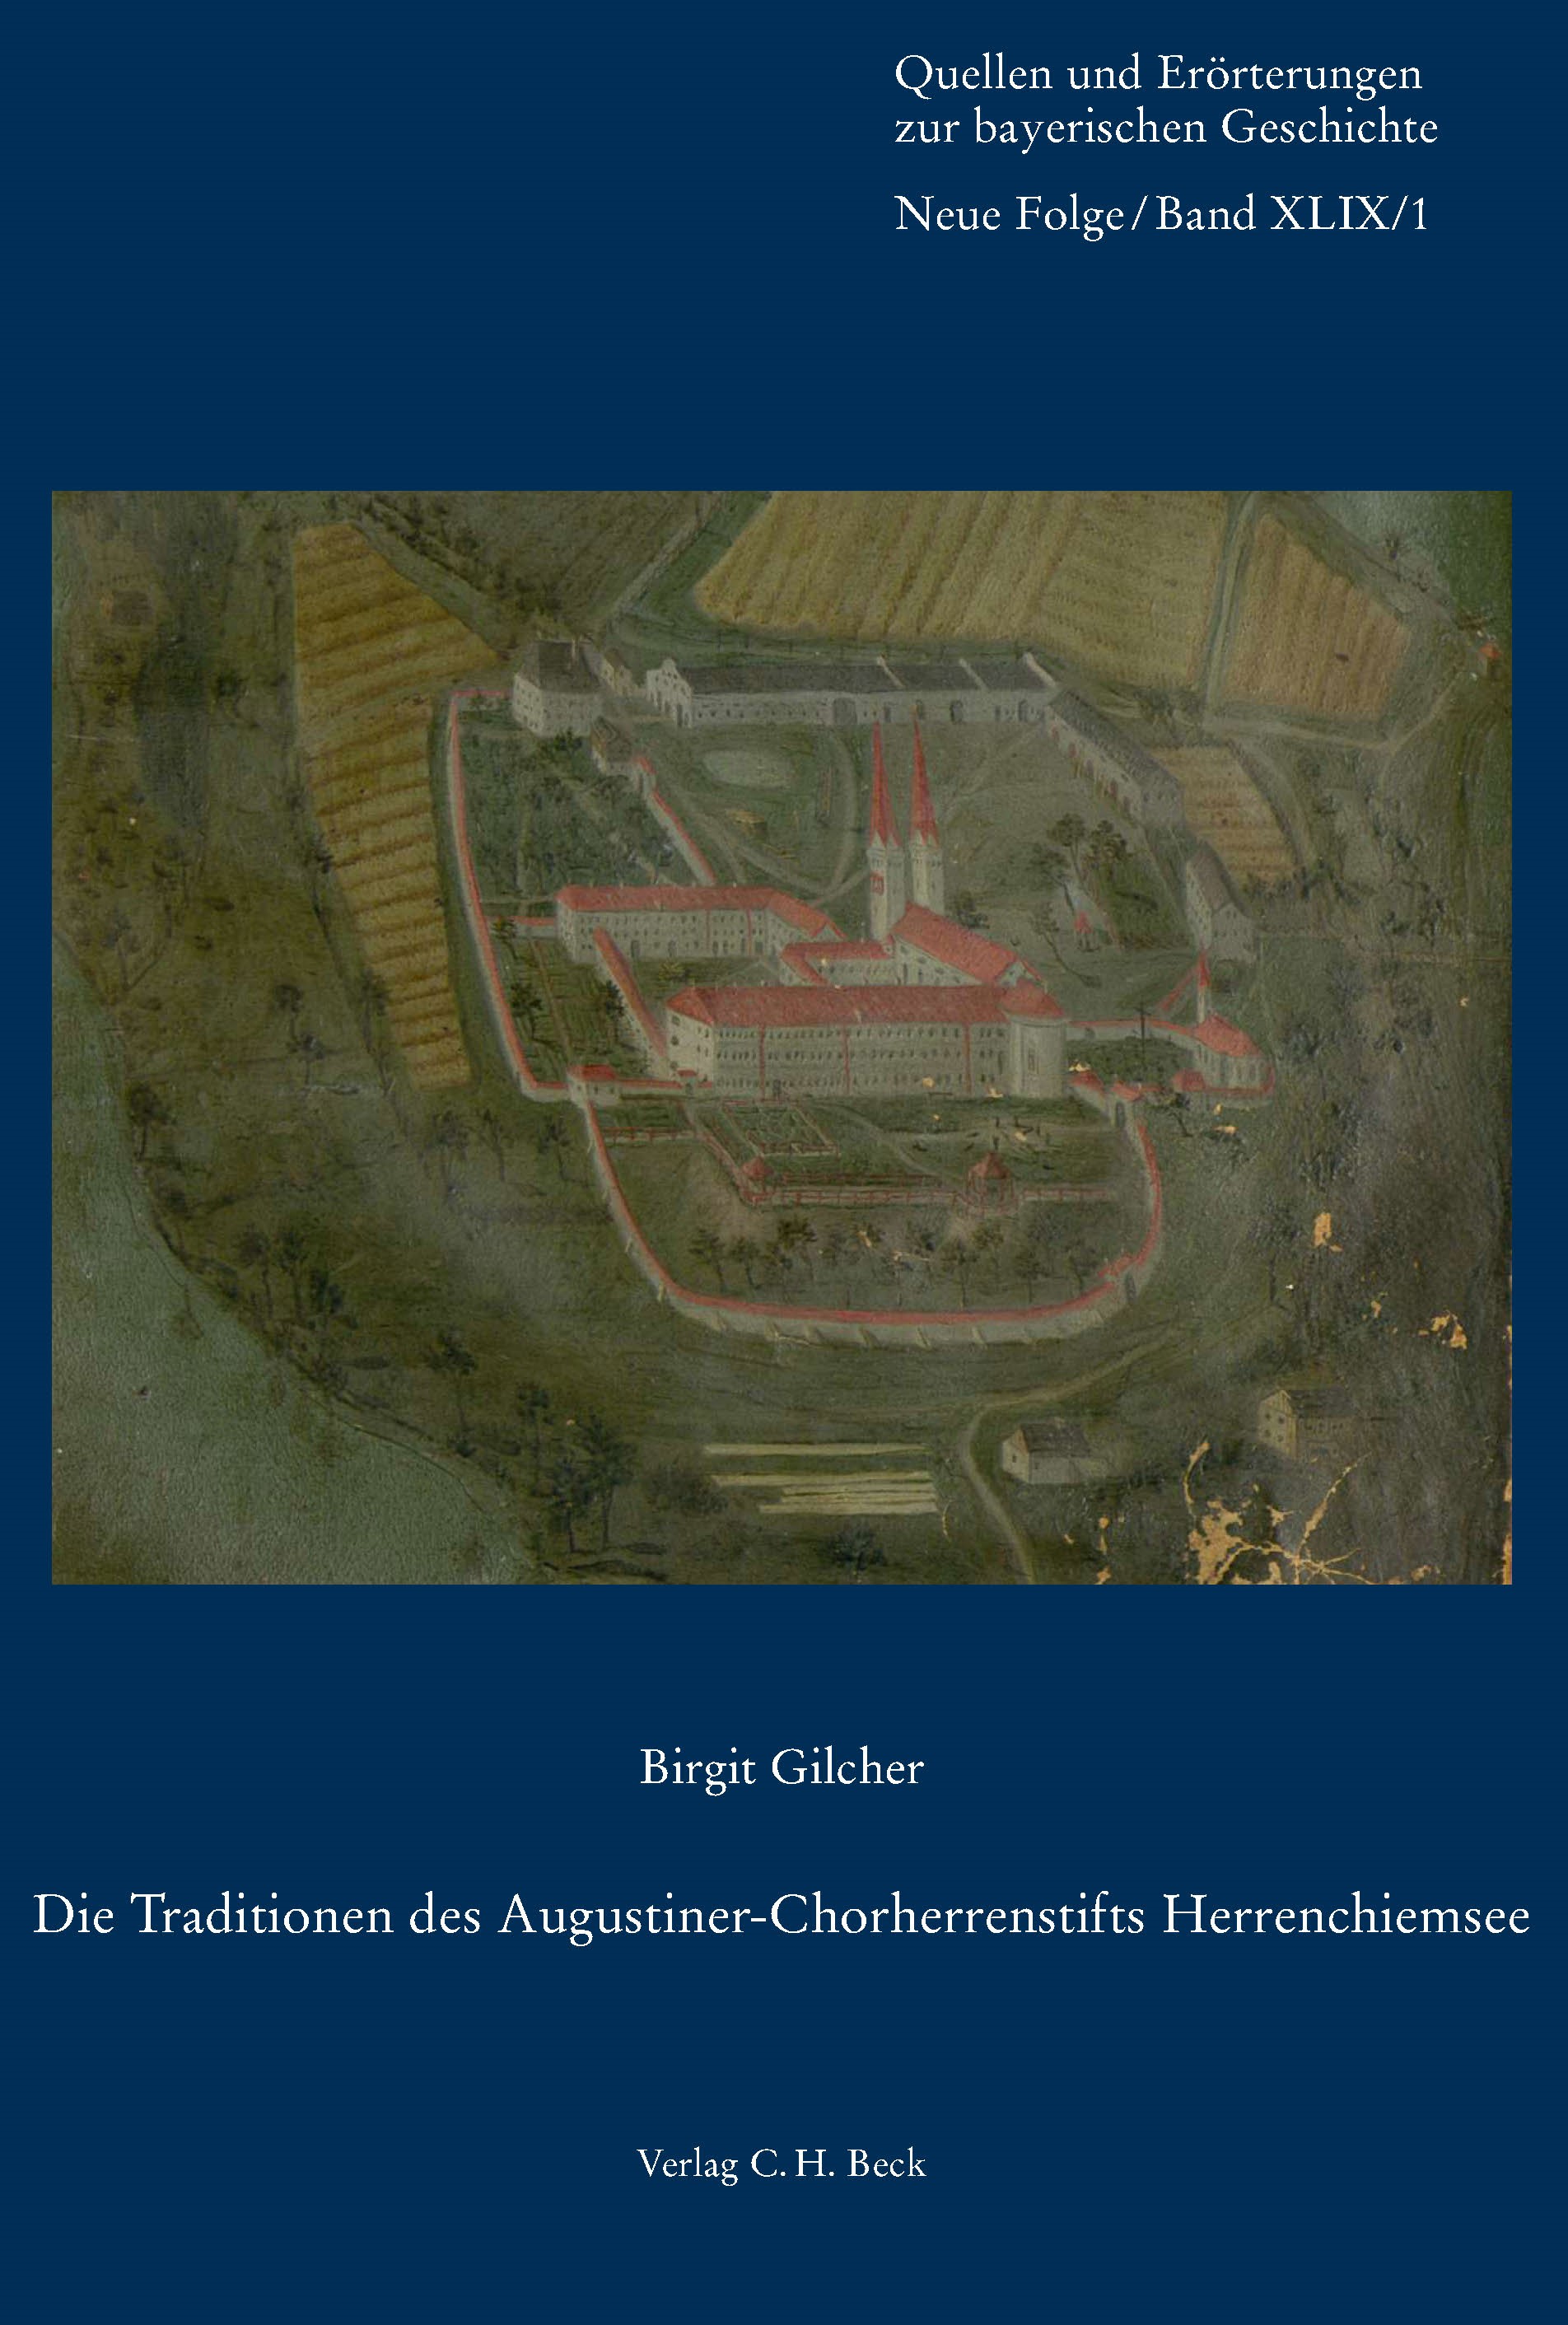 Cover: Gilcher, Birgit, Die Traditionen des Augustiner-Chorherrenstifts Herrenchiemsee